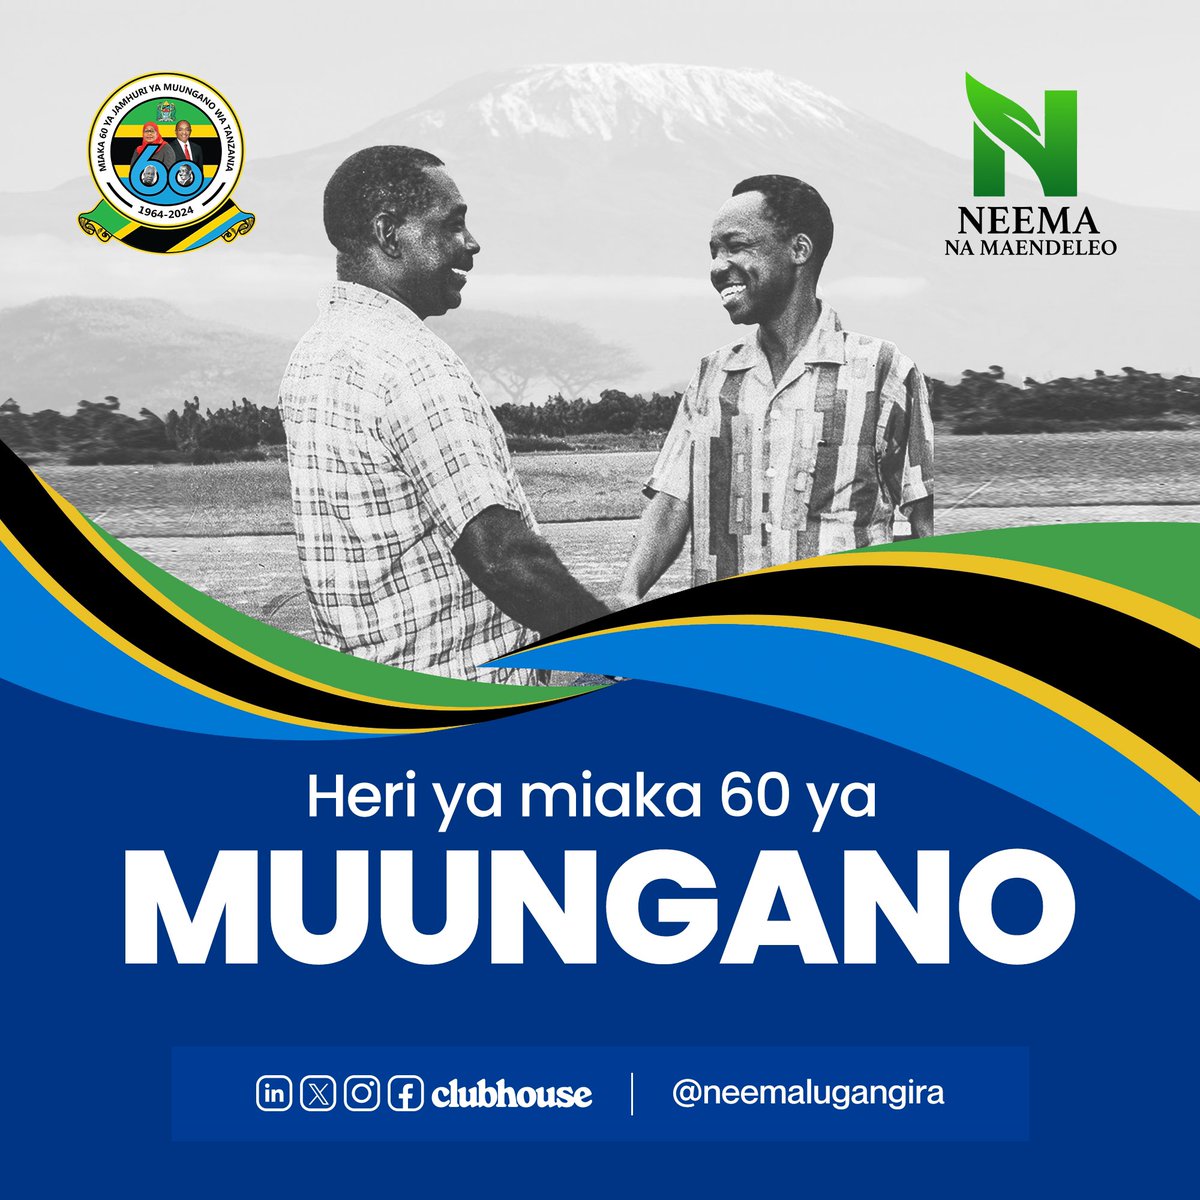 Heri ya Miaka 60 ya Jamhuri ya Muungano wa Tanzania; Tumeshikamana na Tumeimarika, kwa Maendeleo ya Taifa Letu #MuunganoDay